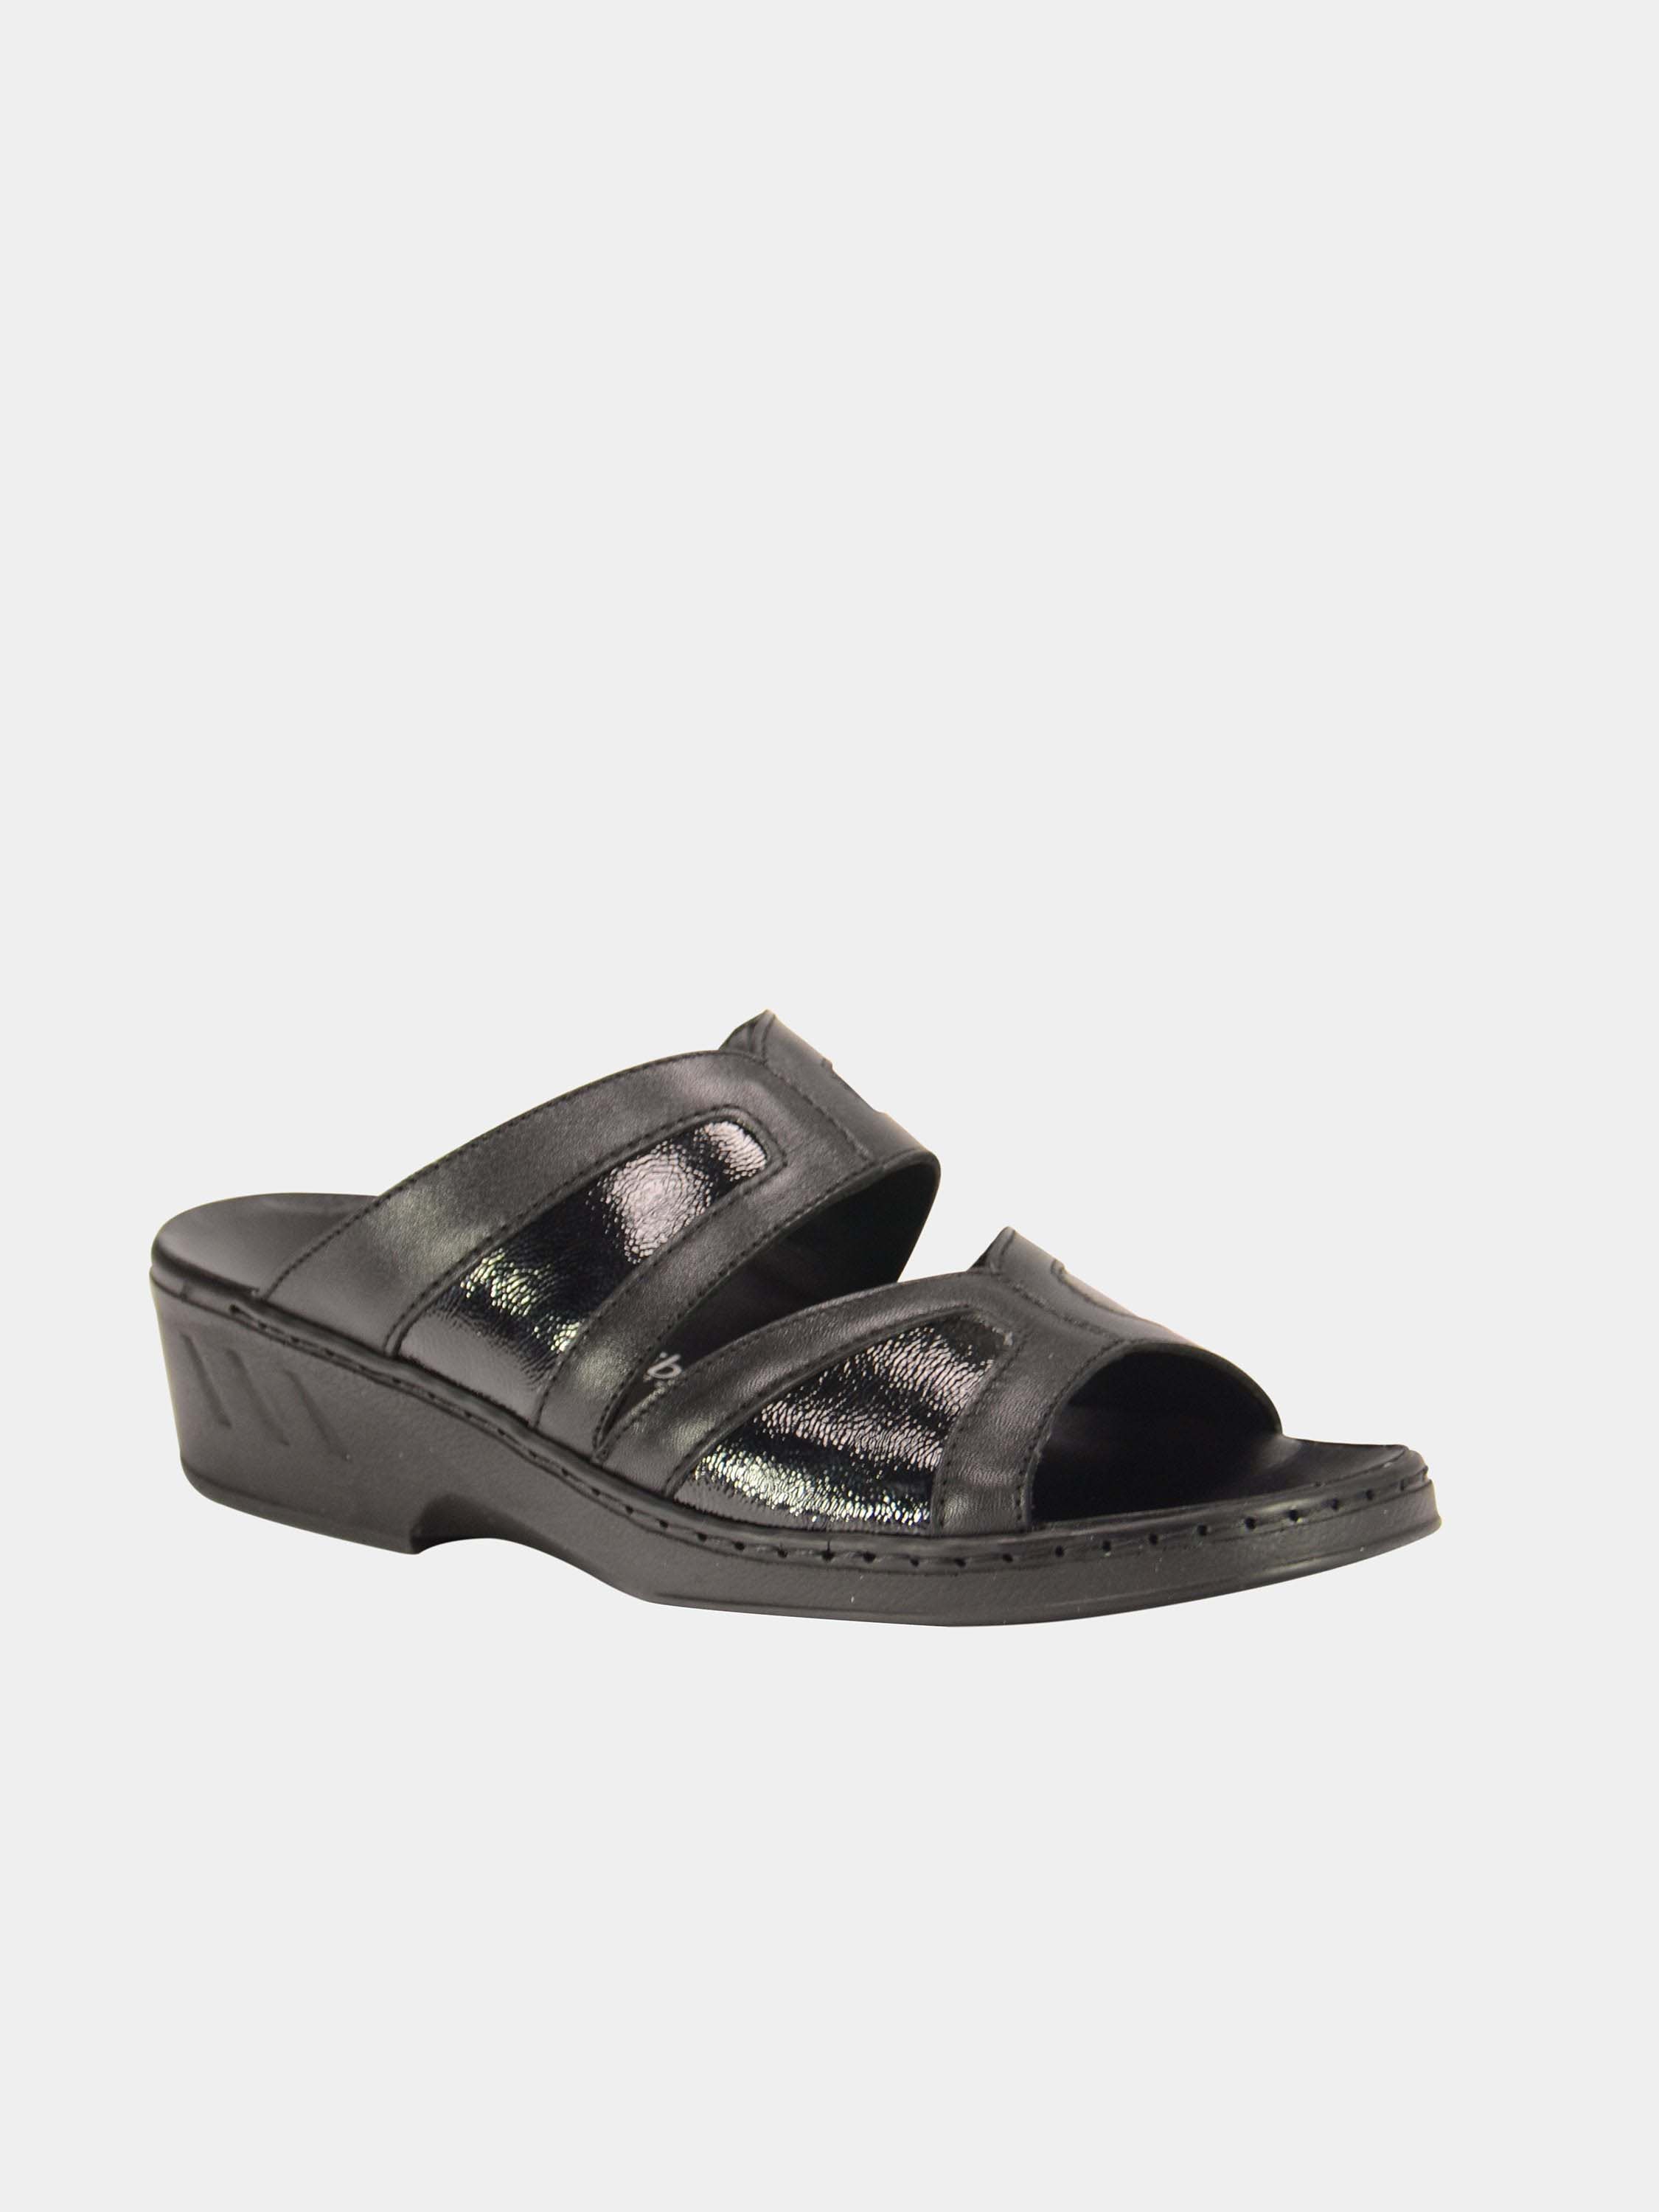 Josef Seibel Airped Insoled Slider Sandals #color_Black